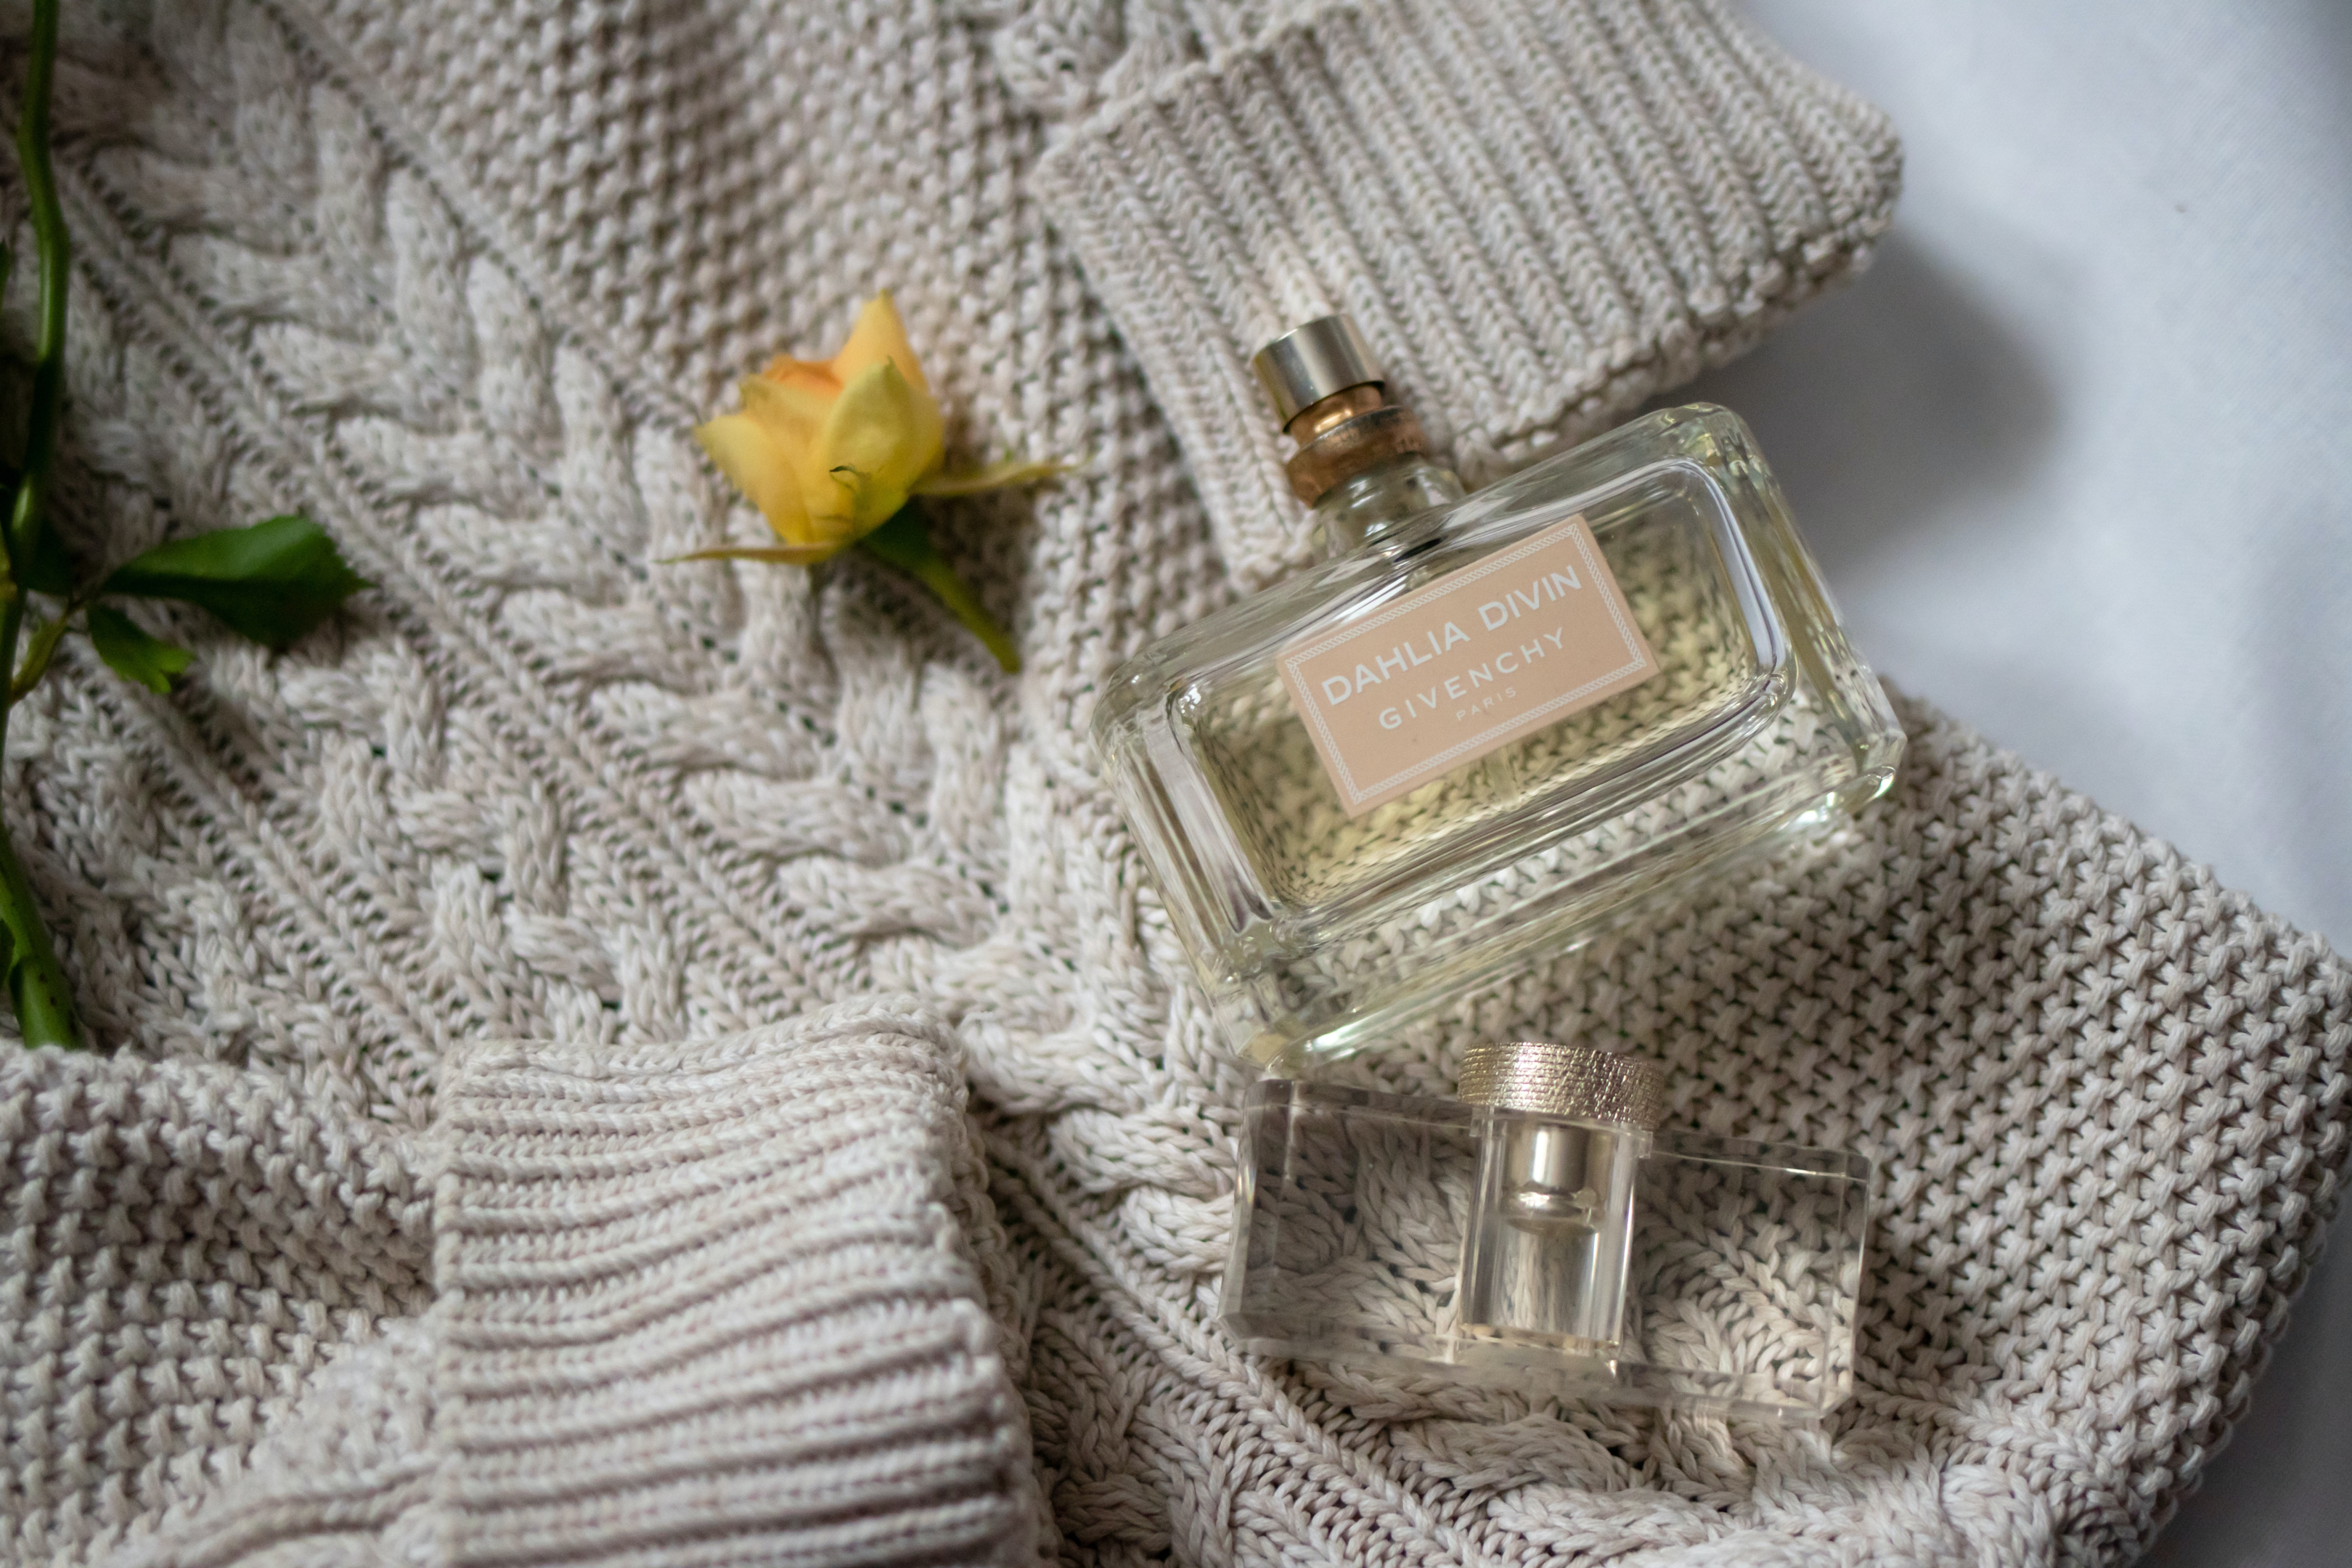  Givenchy's perfume for women aims to celebrate femininity | Photo by Anastasiya Podkorytova from Pexels